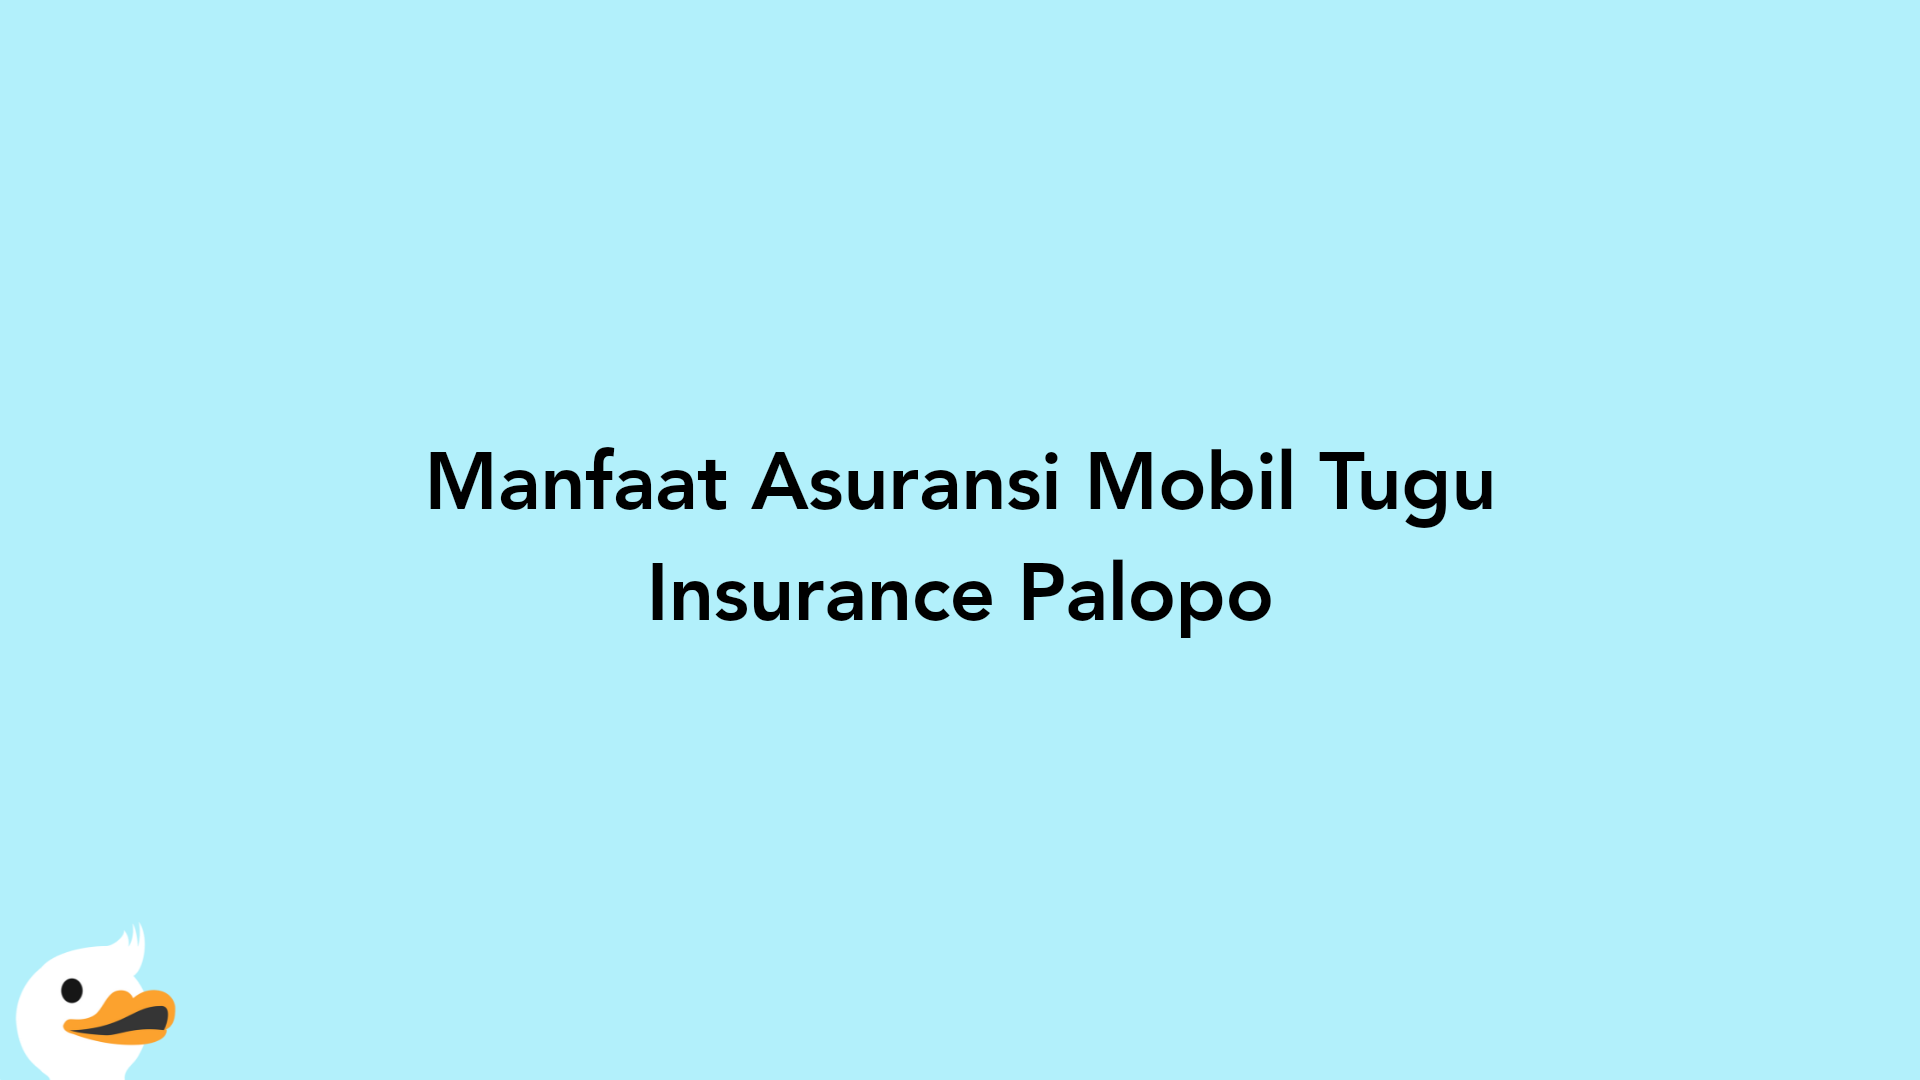 Manfaat Asuransi Mobil Tugu Insurance Palopo